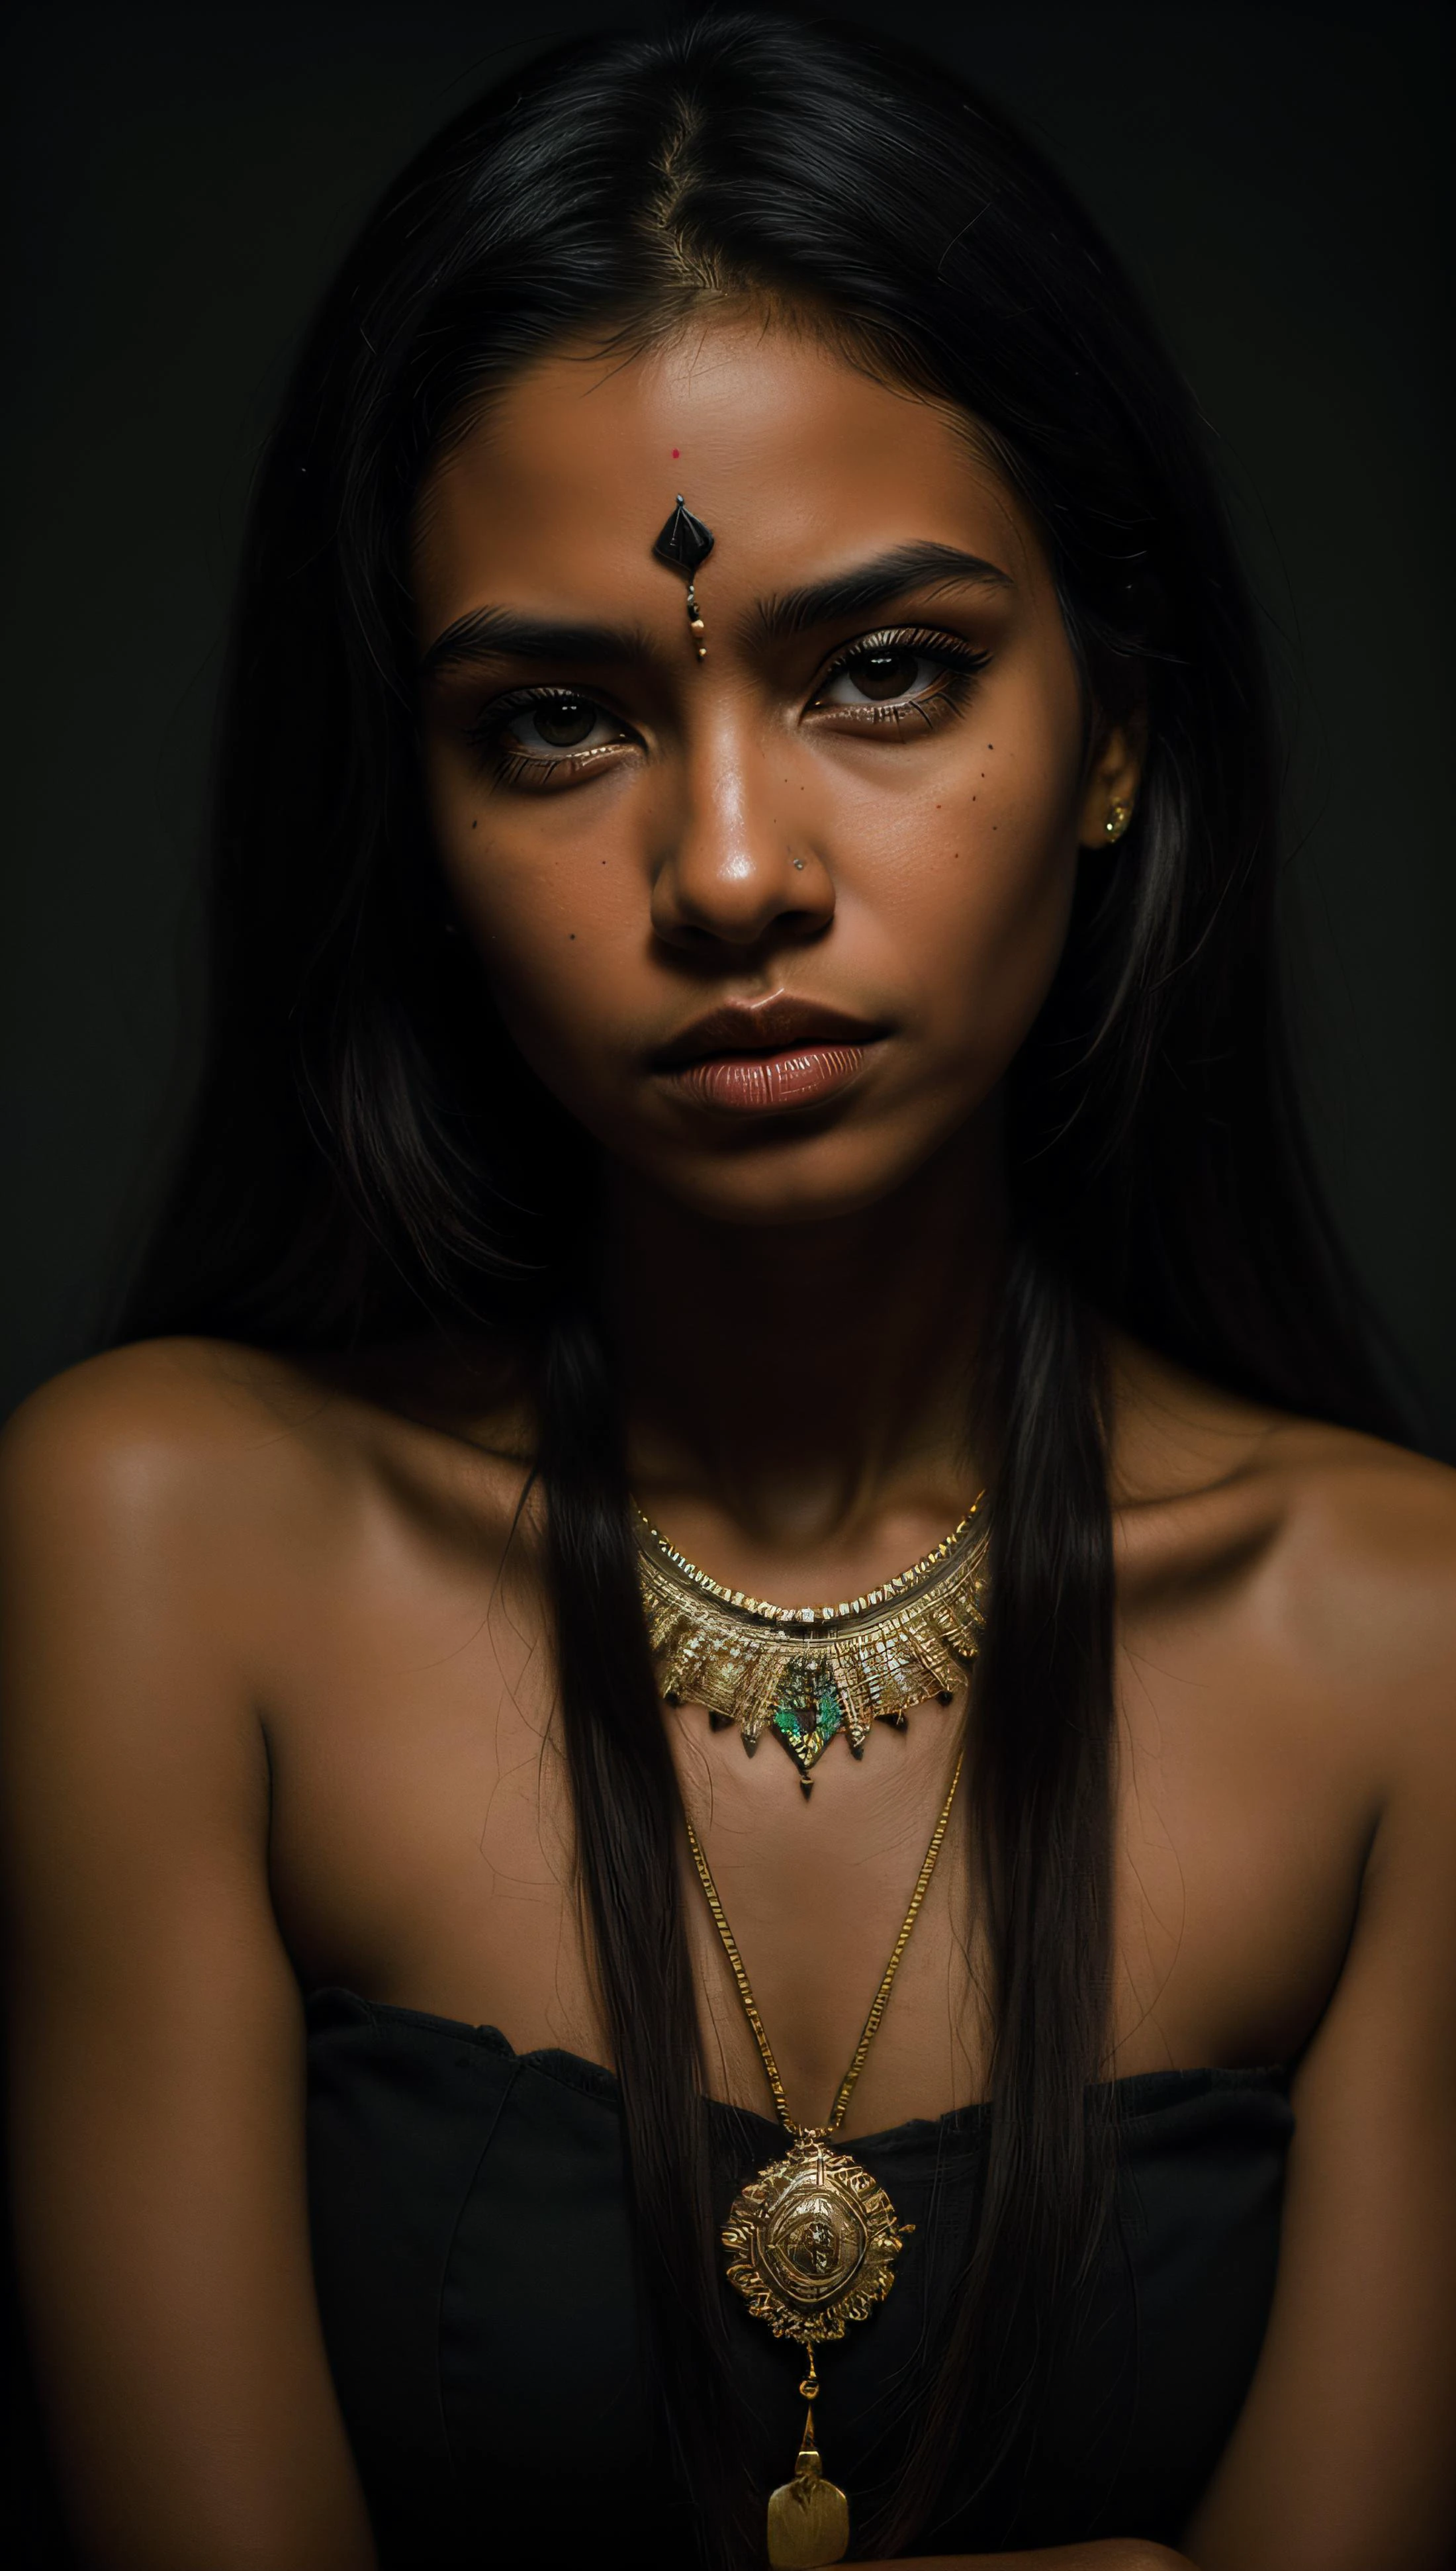 mulher tribal com pele caramelo, sombra profunda, tema escuro, Retrato de 40 mm, colar tribal, ornamentos tribais, abandonado, foto profissional, 28mm, analógico, (Geografia nacional)